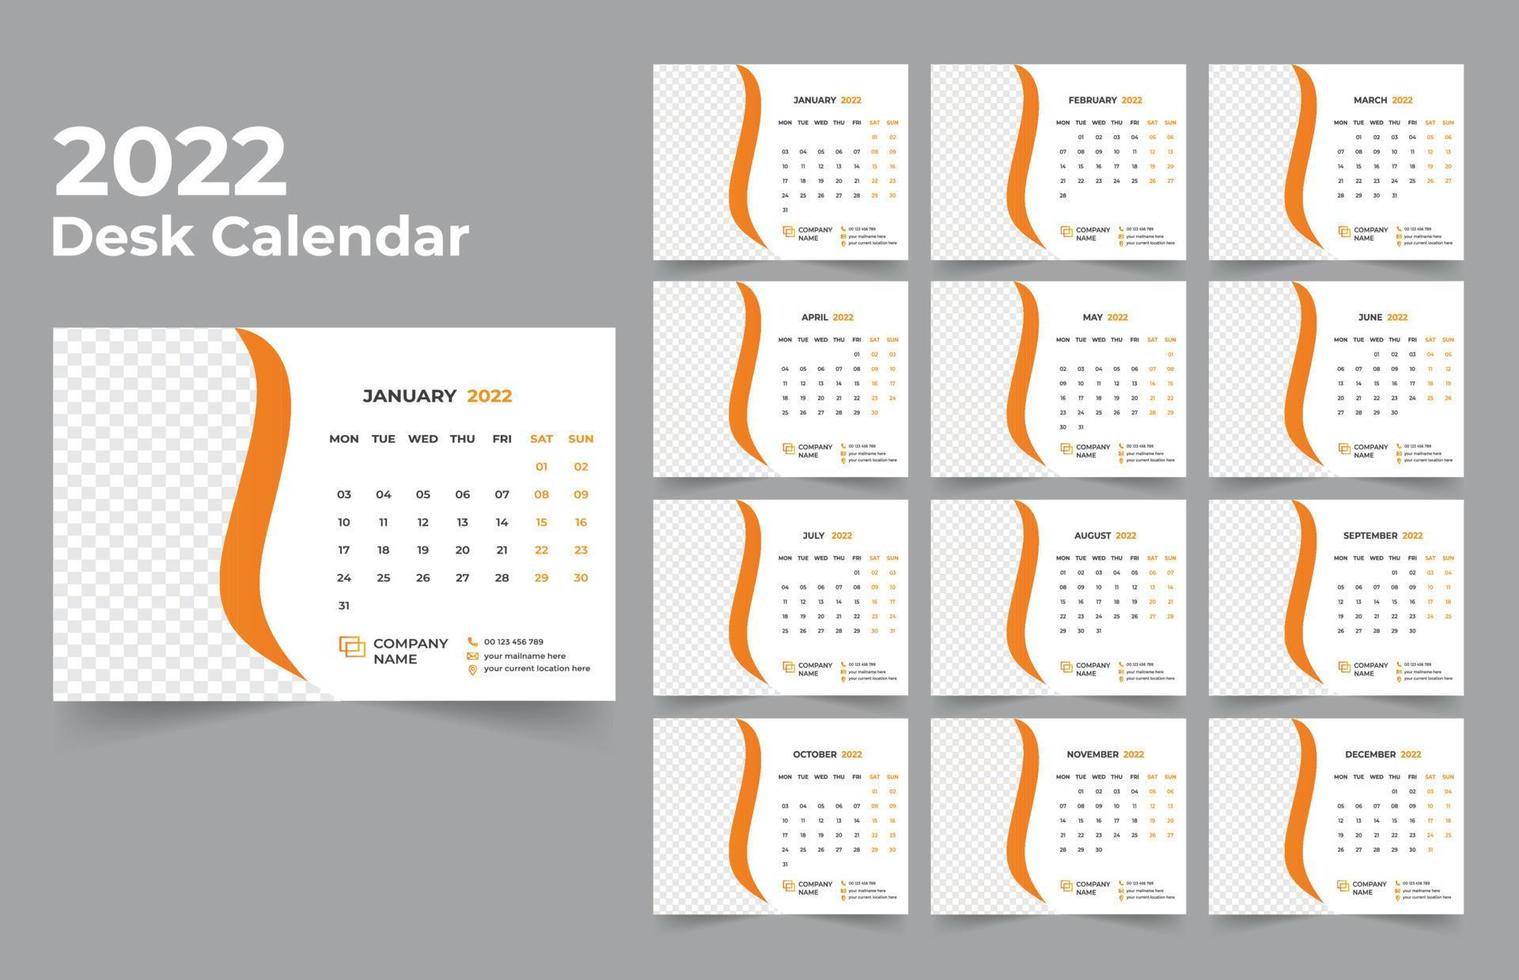 ensemble de modèles de conception de calendrier de bureau 2022 de 12 mois, la semaine commence lundi, conception de papeterie, planificateur de calendrier vecteur